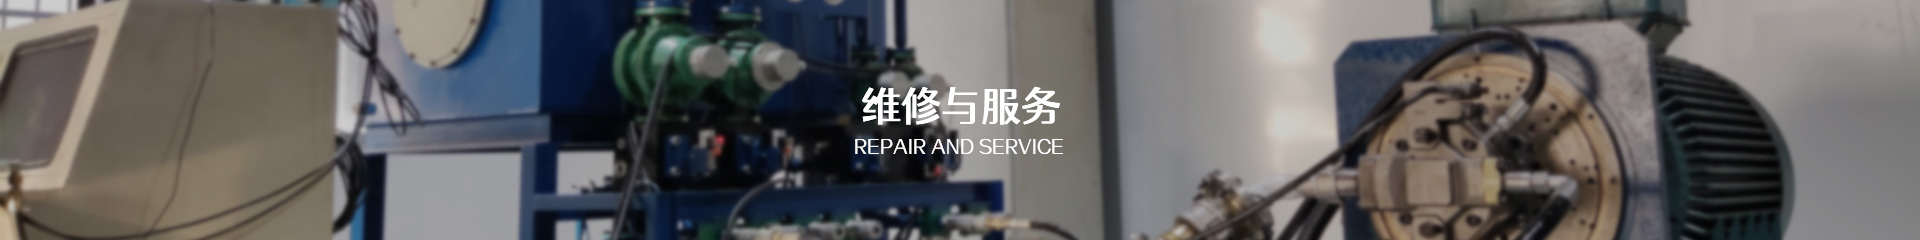 Repair centre